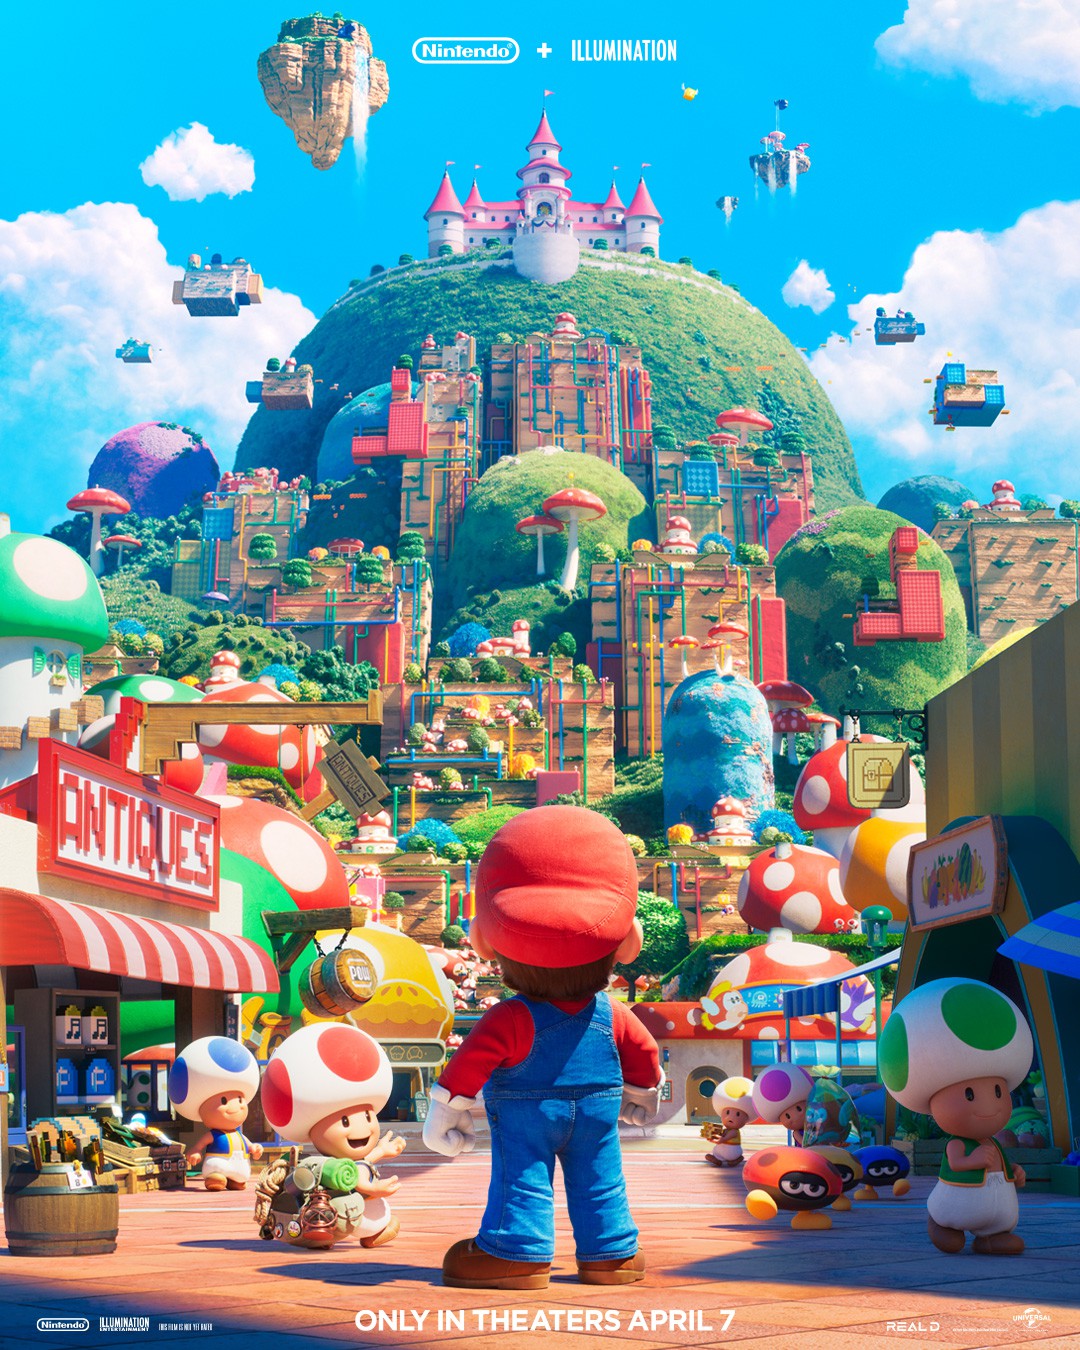 Illumination Reveals Second Super Mario Bros Trailer!!!